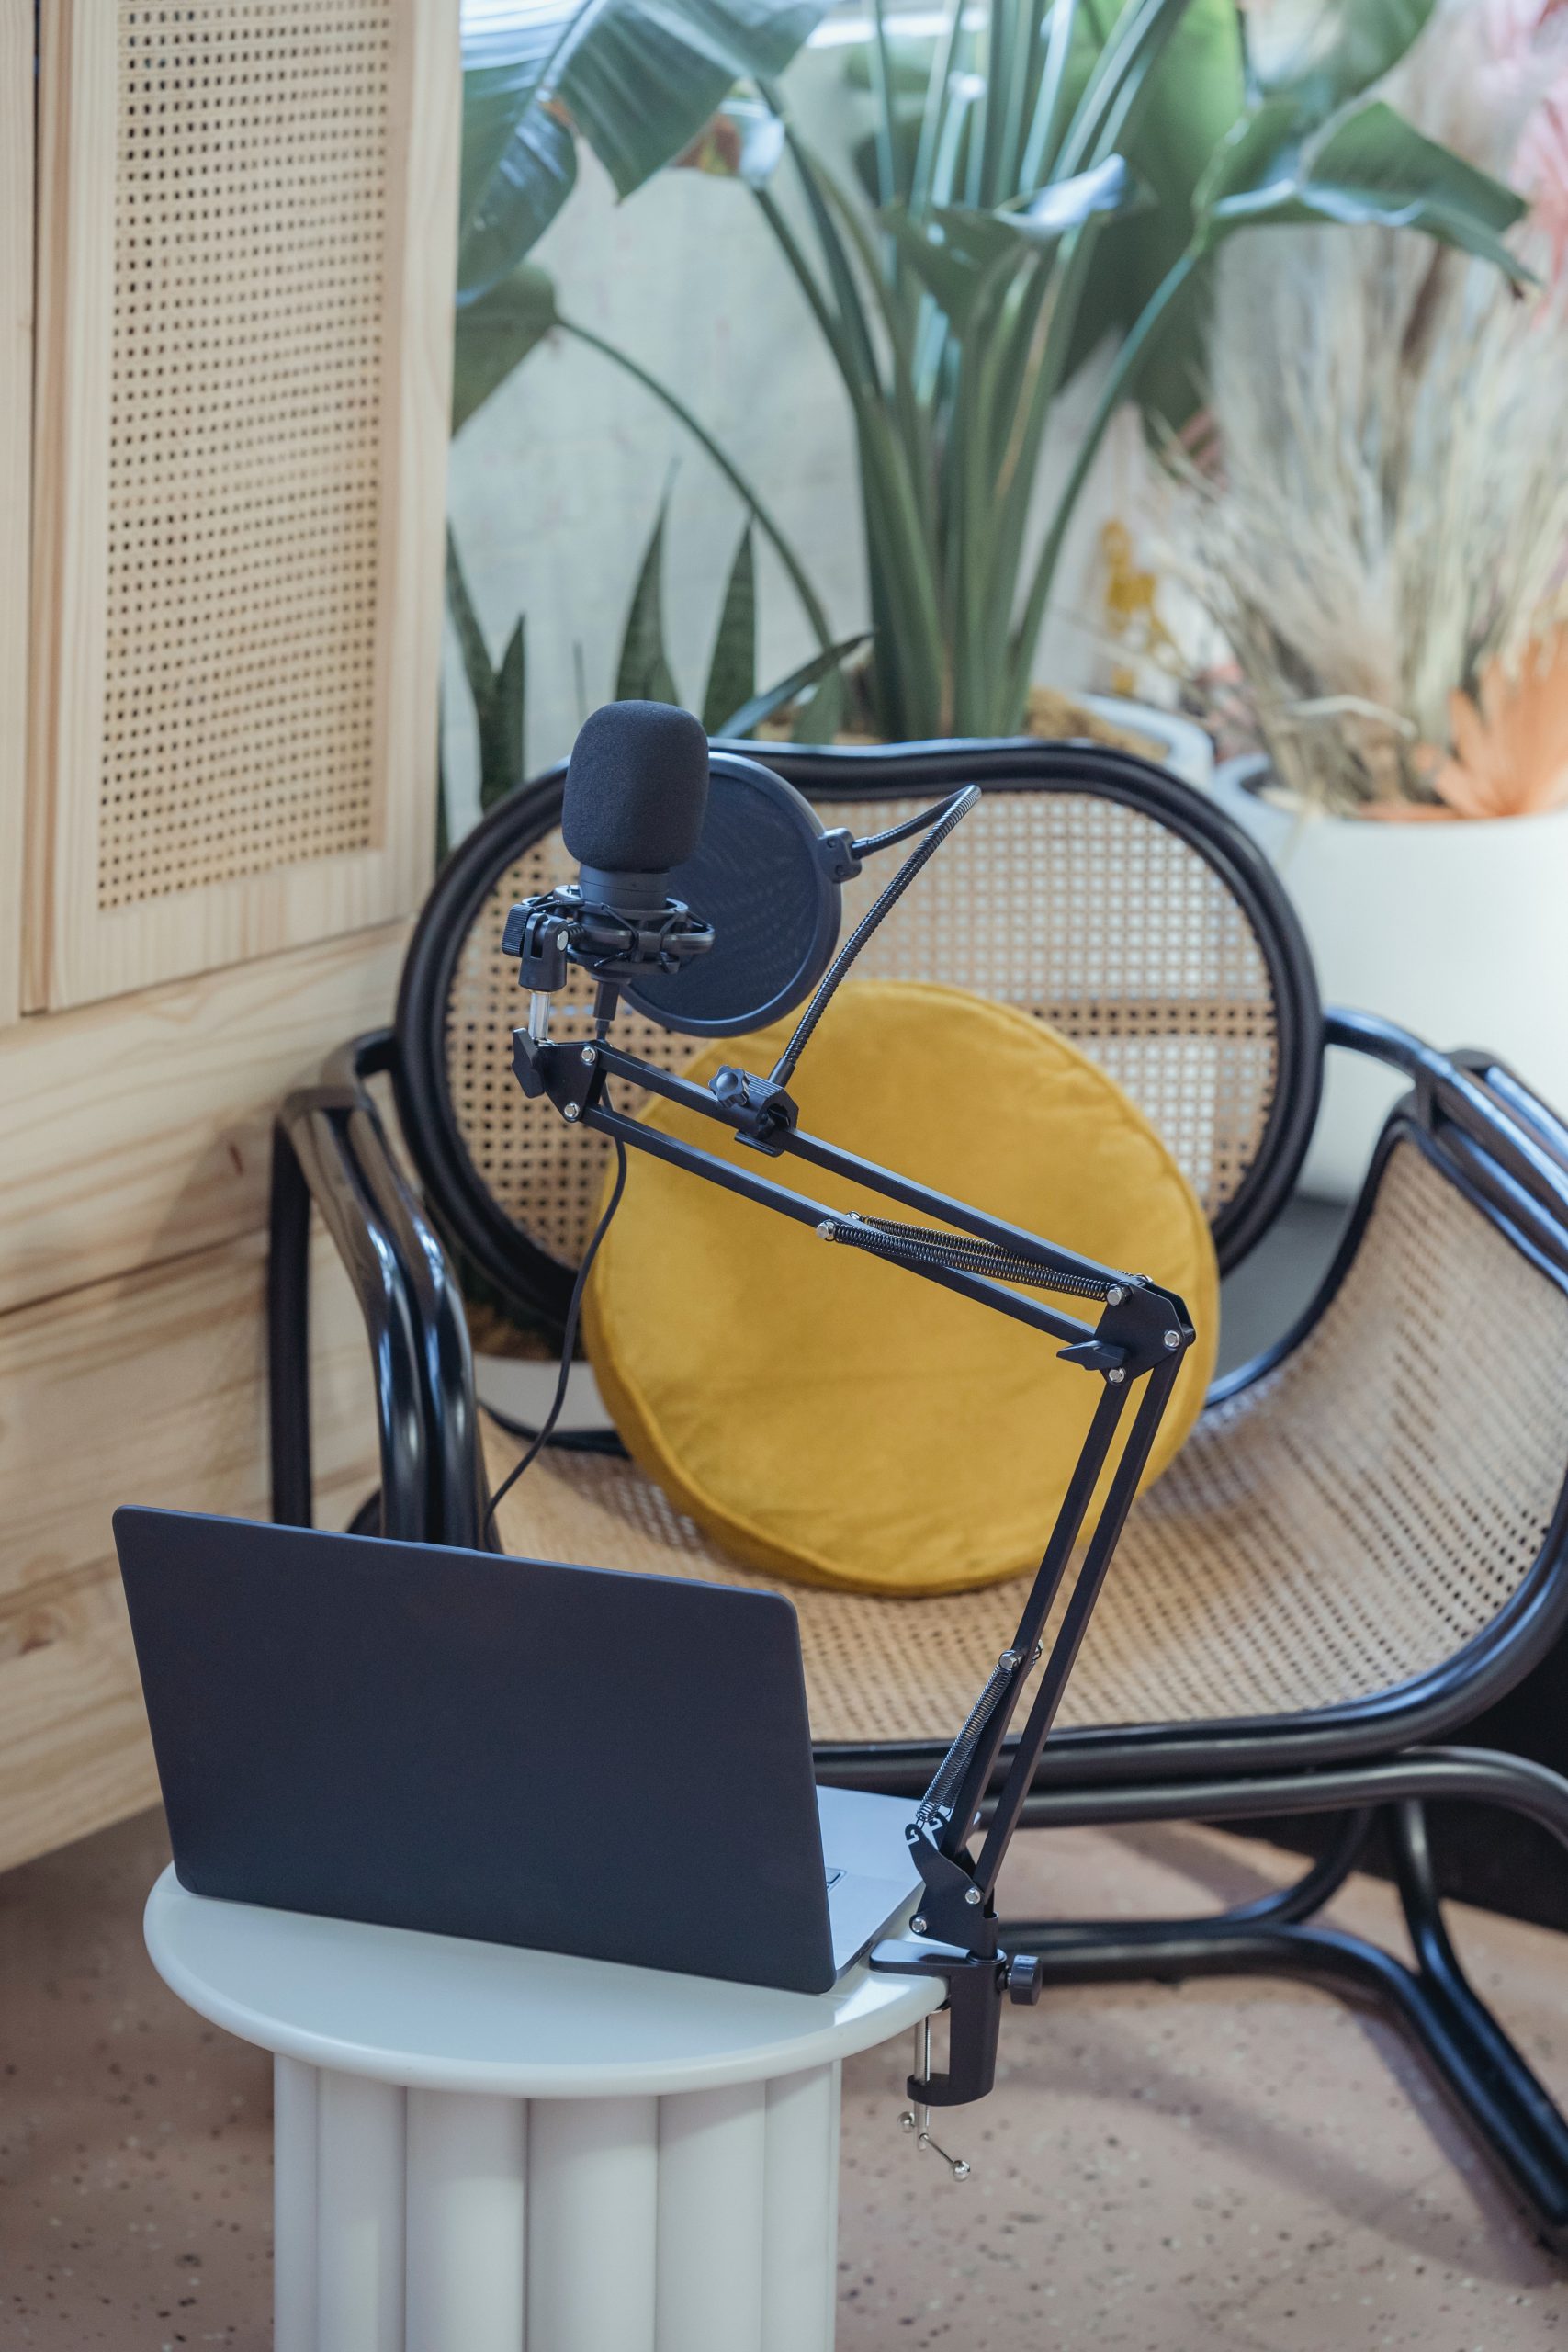 Define Your Podcast's Niche and Purpose